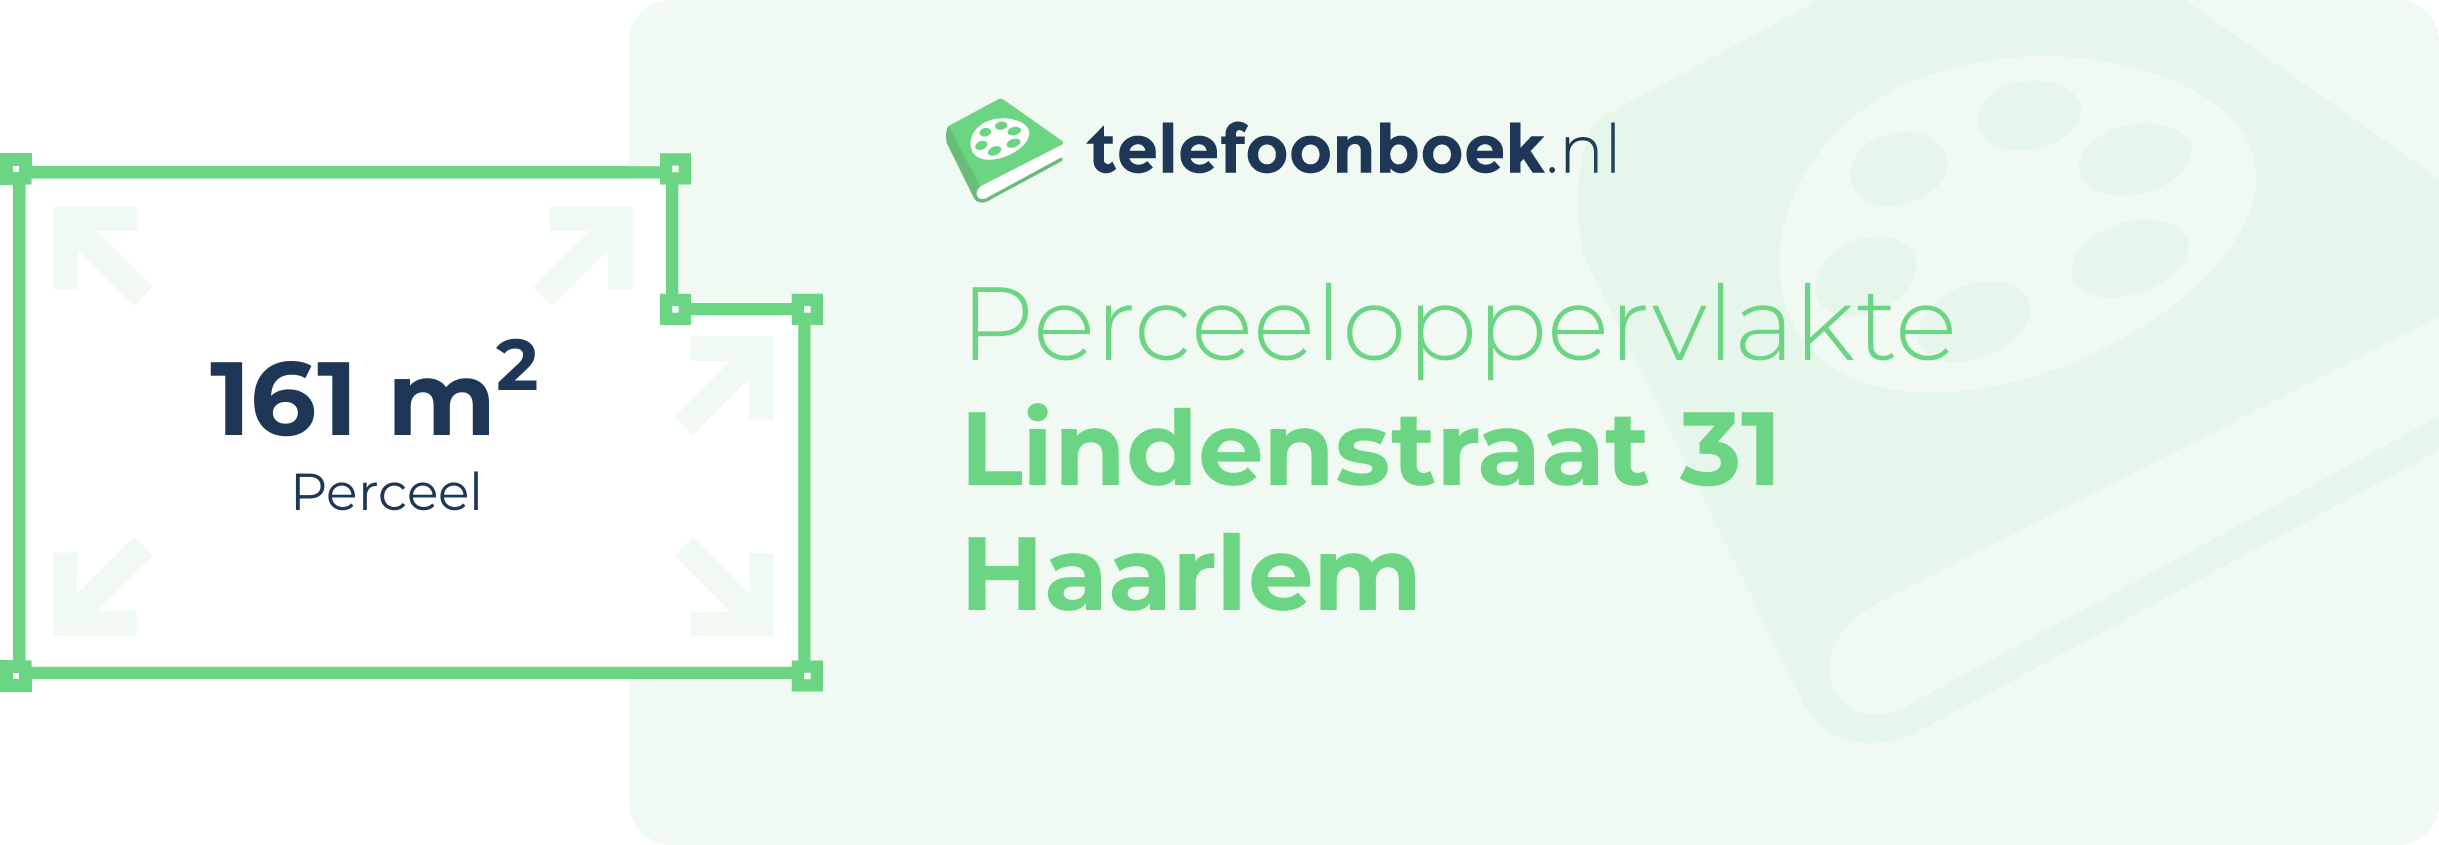 Perceeloppervlakte Lindenstraat 31 Haarlem